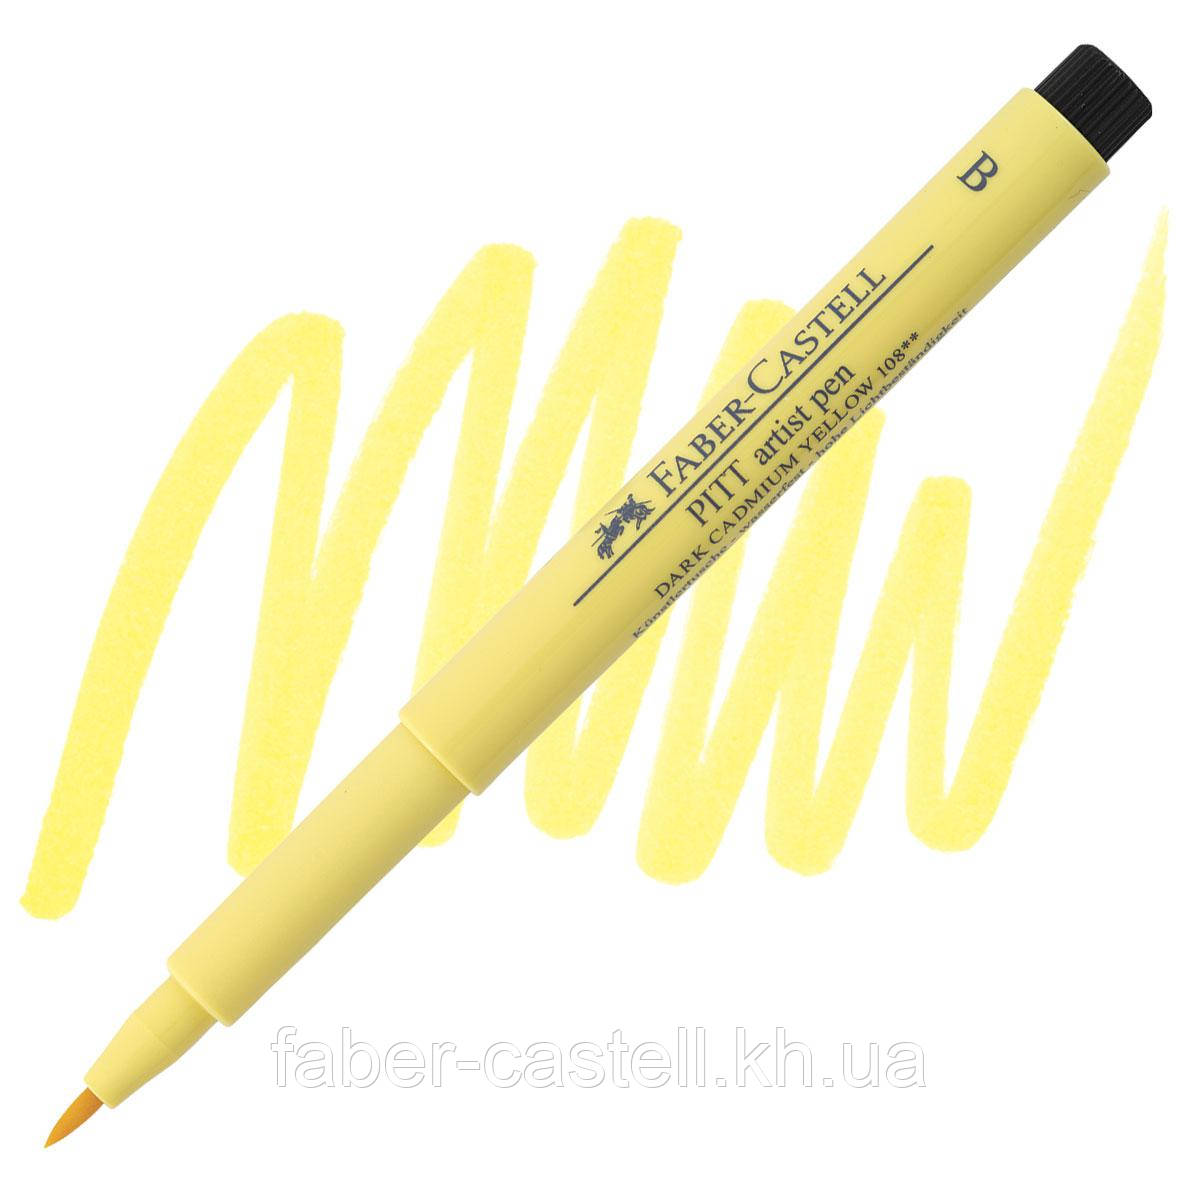 Ручка-пензлик капілярна Faber-Castell Pitt Artist Pen Brush, колір темно-жовтий кадмій №108, 167408